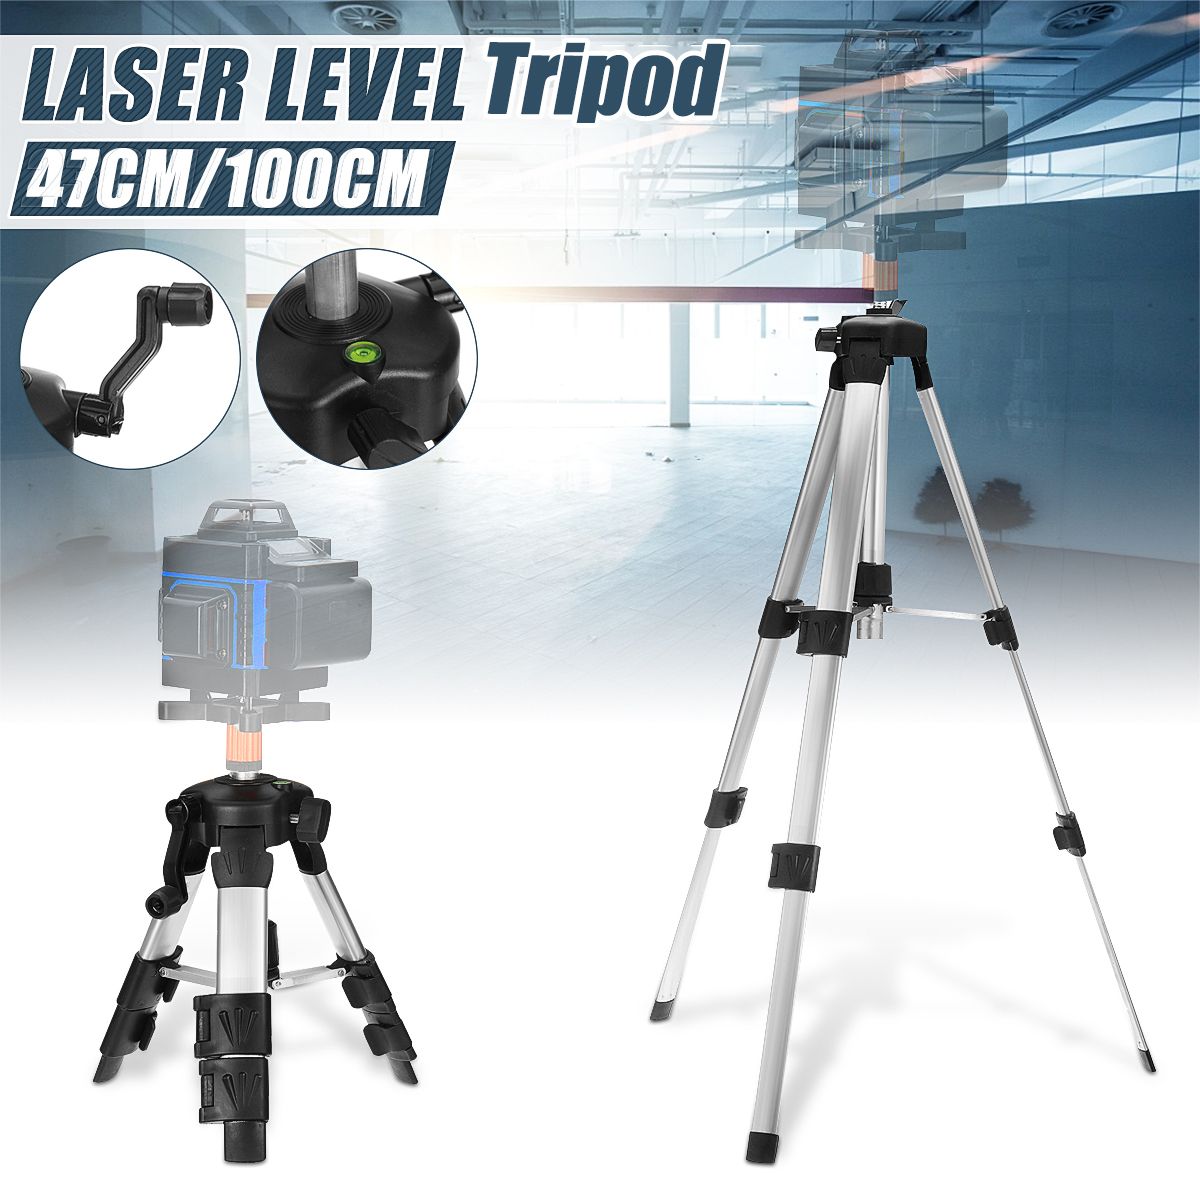 1216-Line-Green-Light-Laser-Level-Digital-Self-Leveling-360deg-Rotary-Measure-Tool-1718011